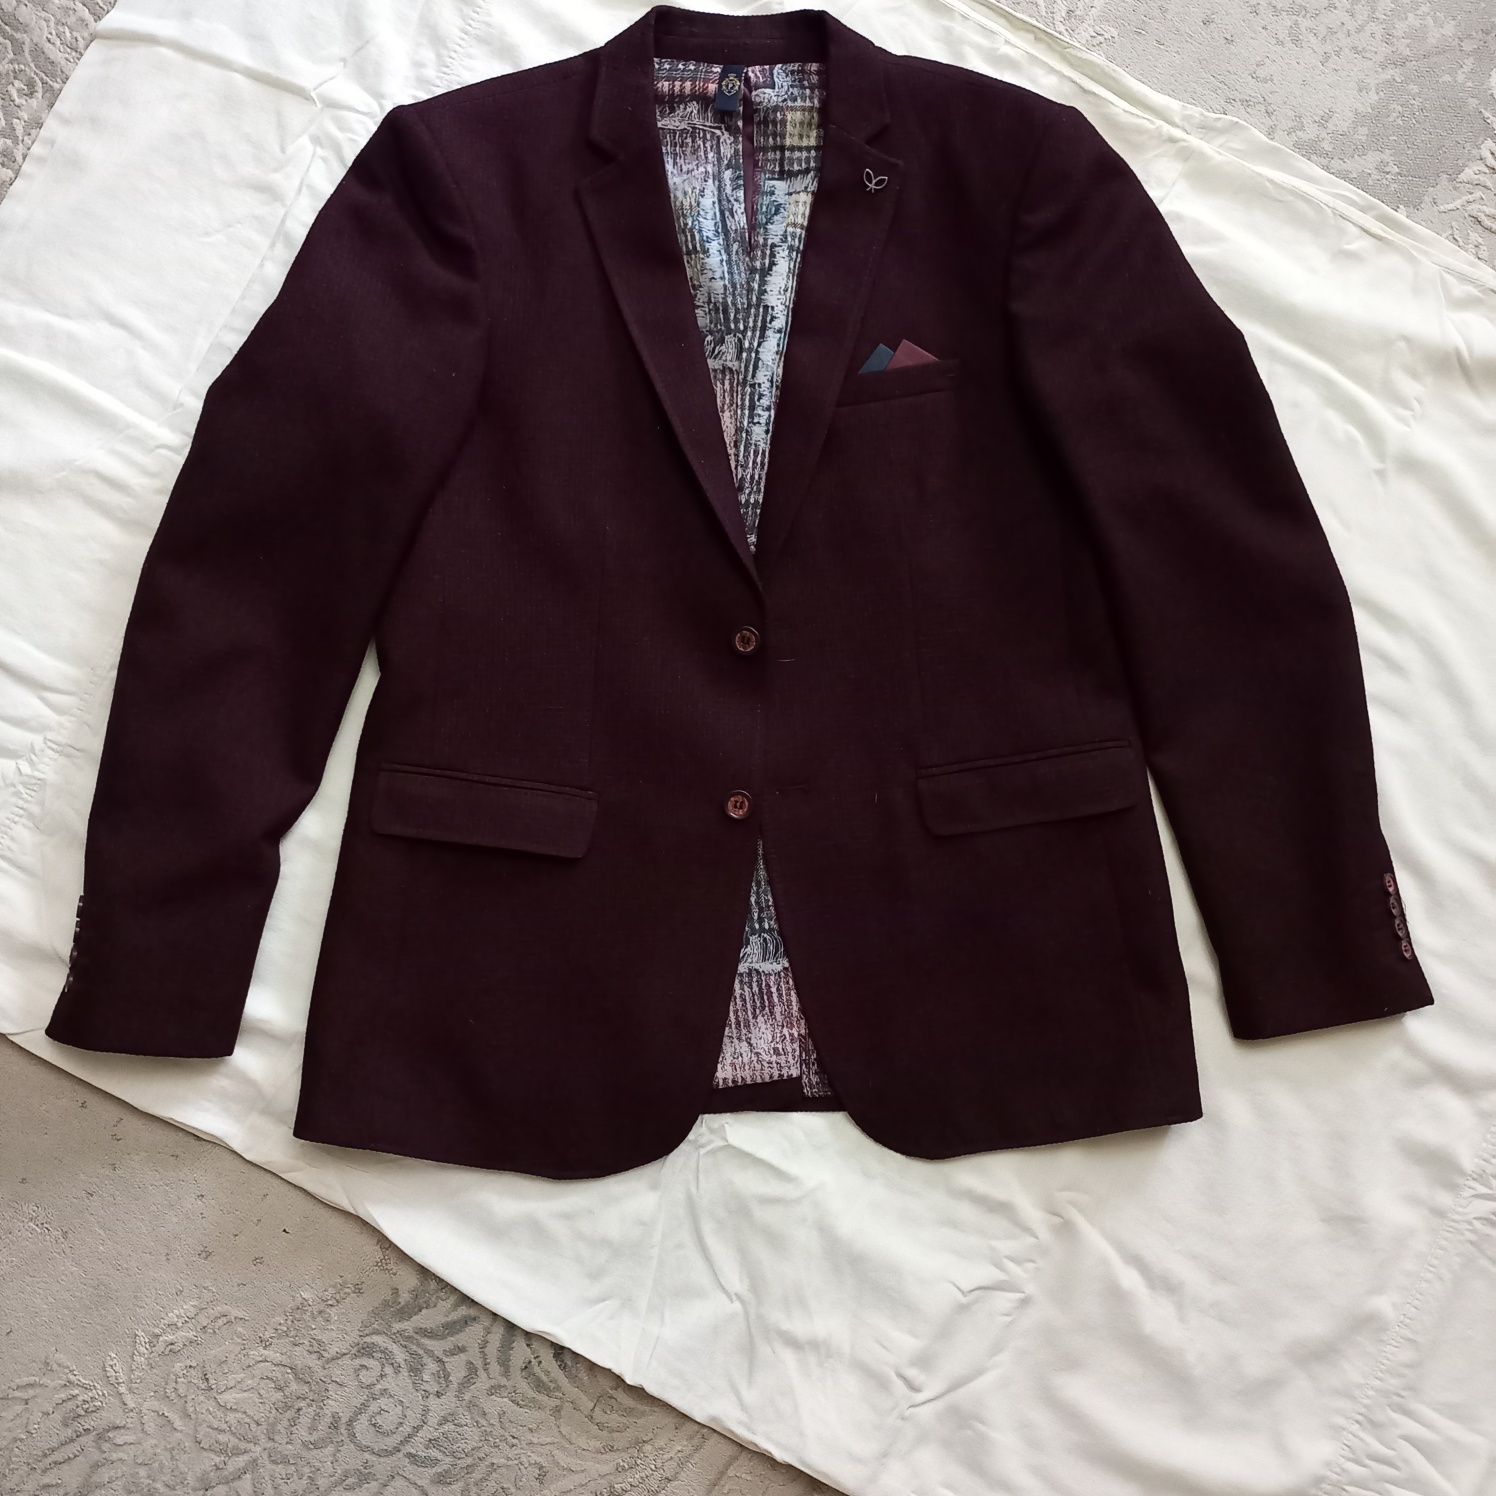 Продам пиджак мужской р/р 48-50,цена 15000 тенге.